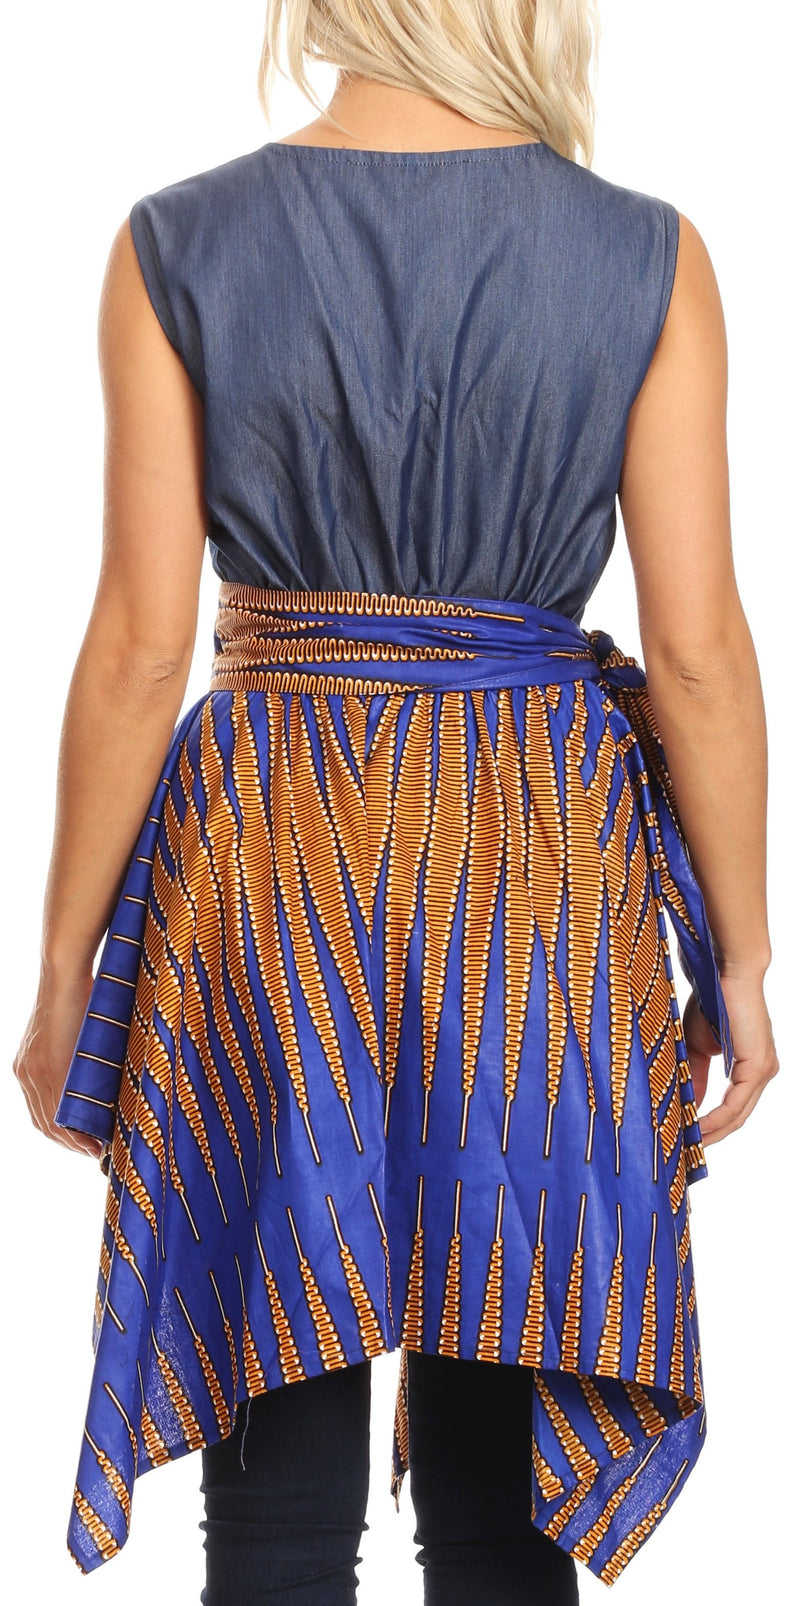 Sakkas Lani Womens Cocktail Sleeveless Hi-Lo Dress in African Print w/Pockets